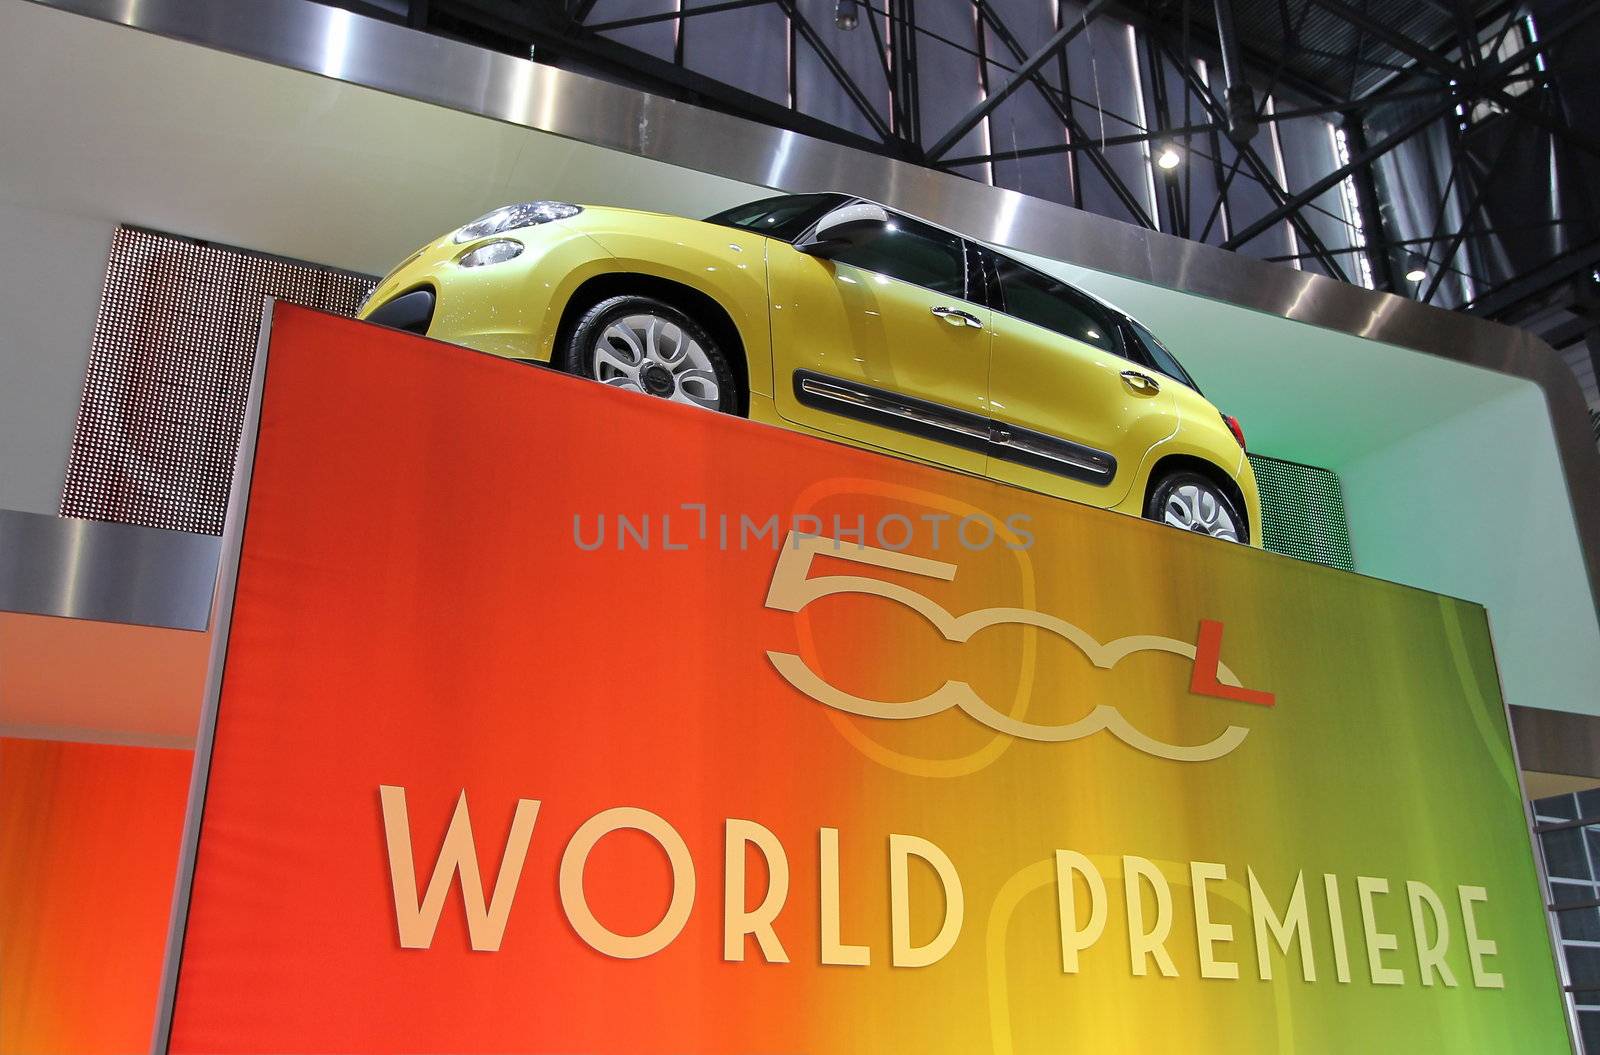 Fiat 500L World Premiere by Elenaphotos21